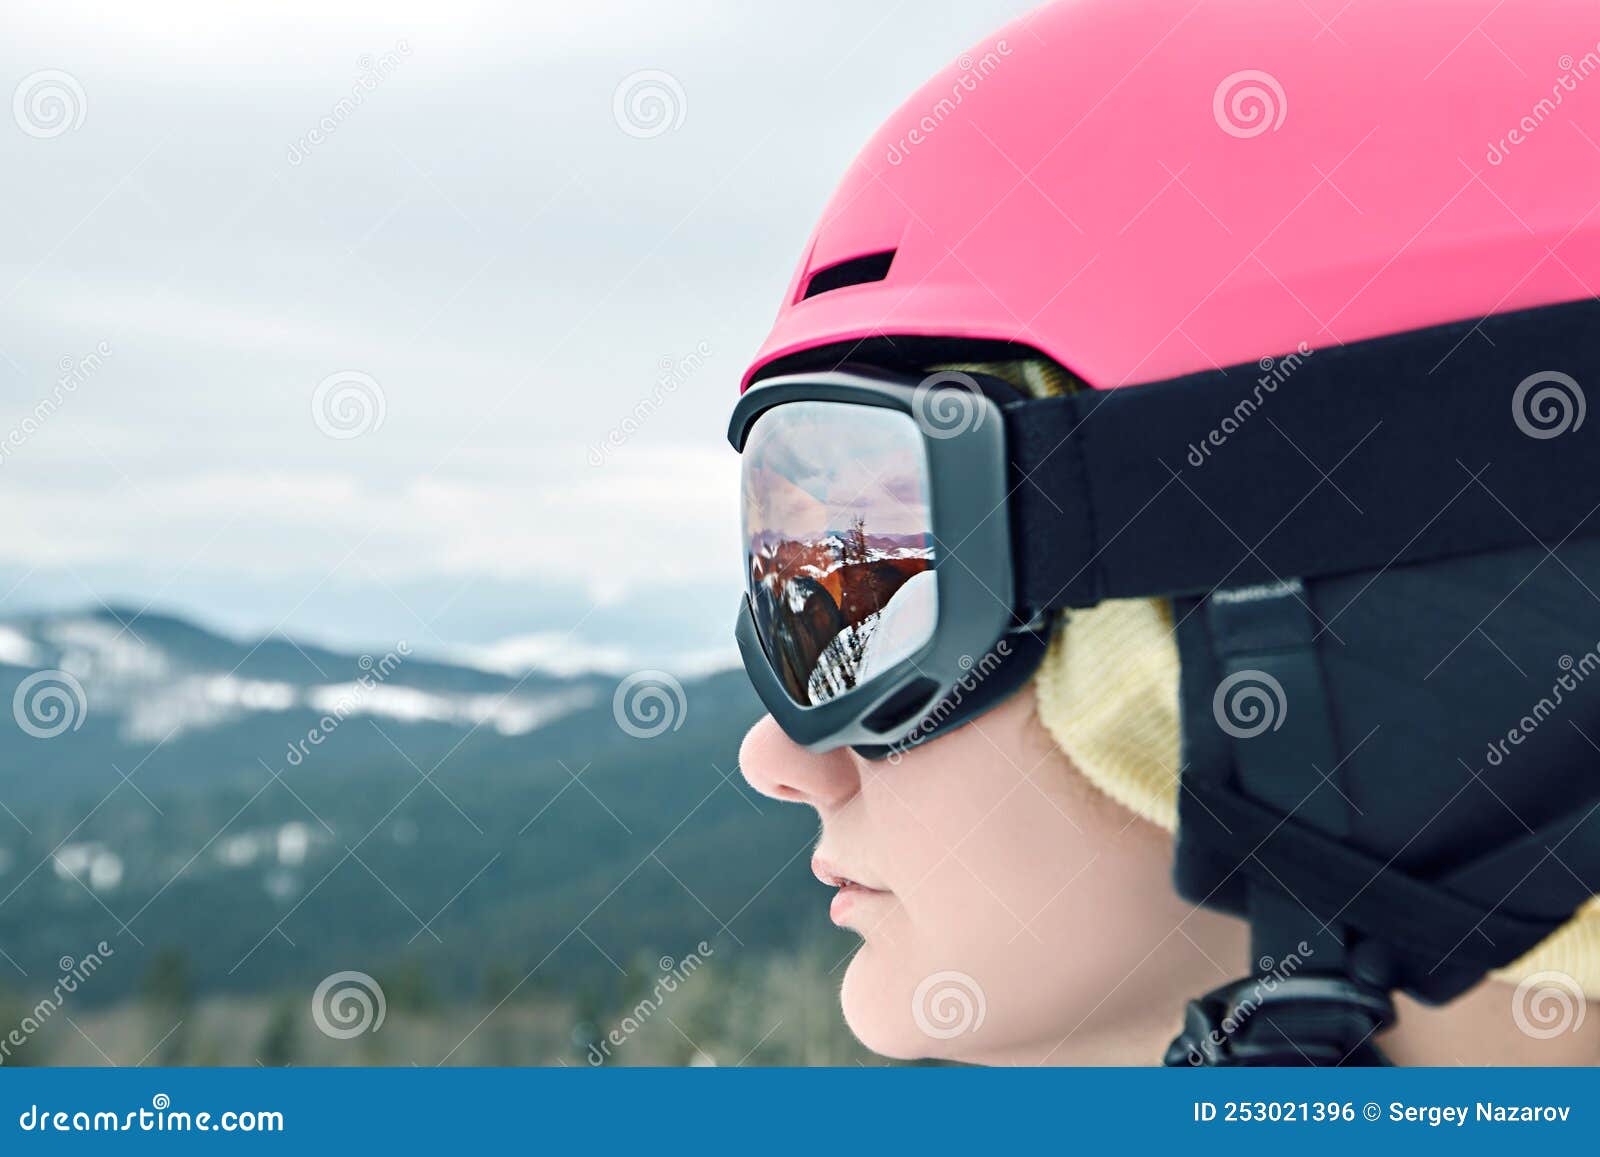 Casco esquí mujer y snowboard